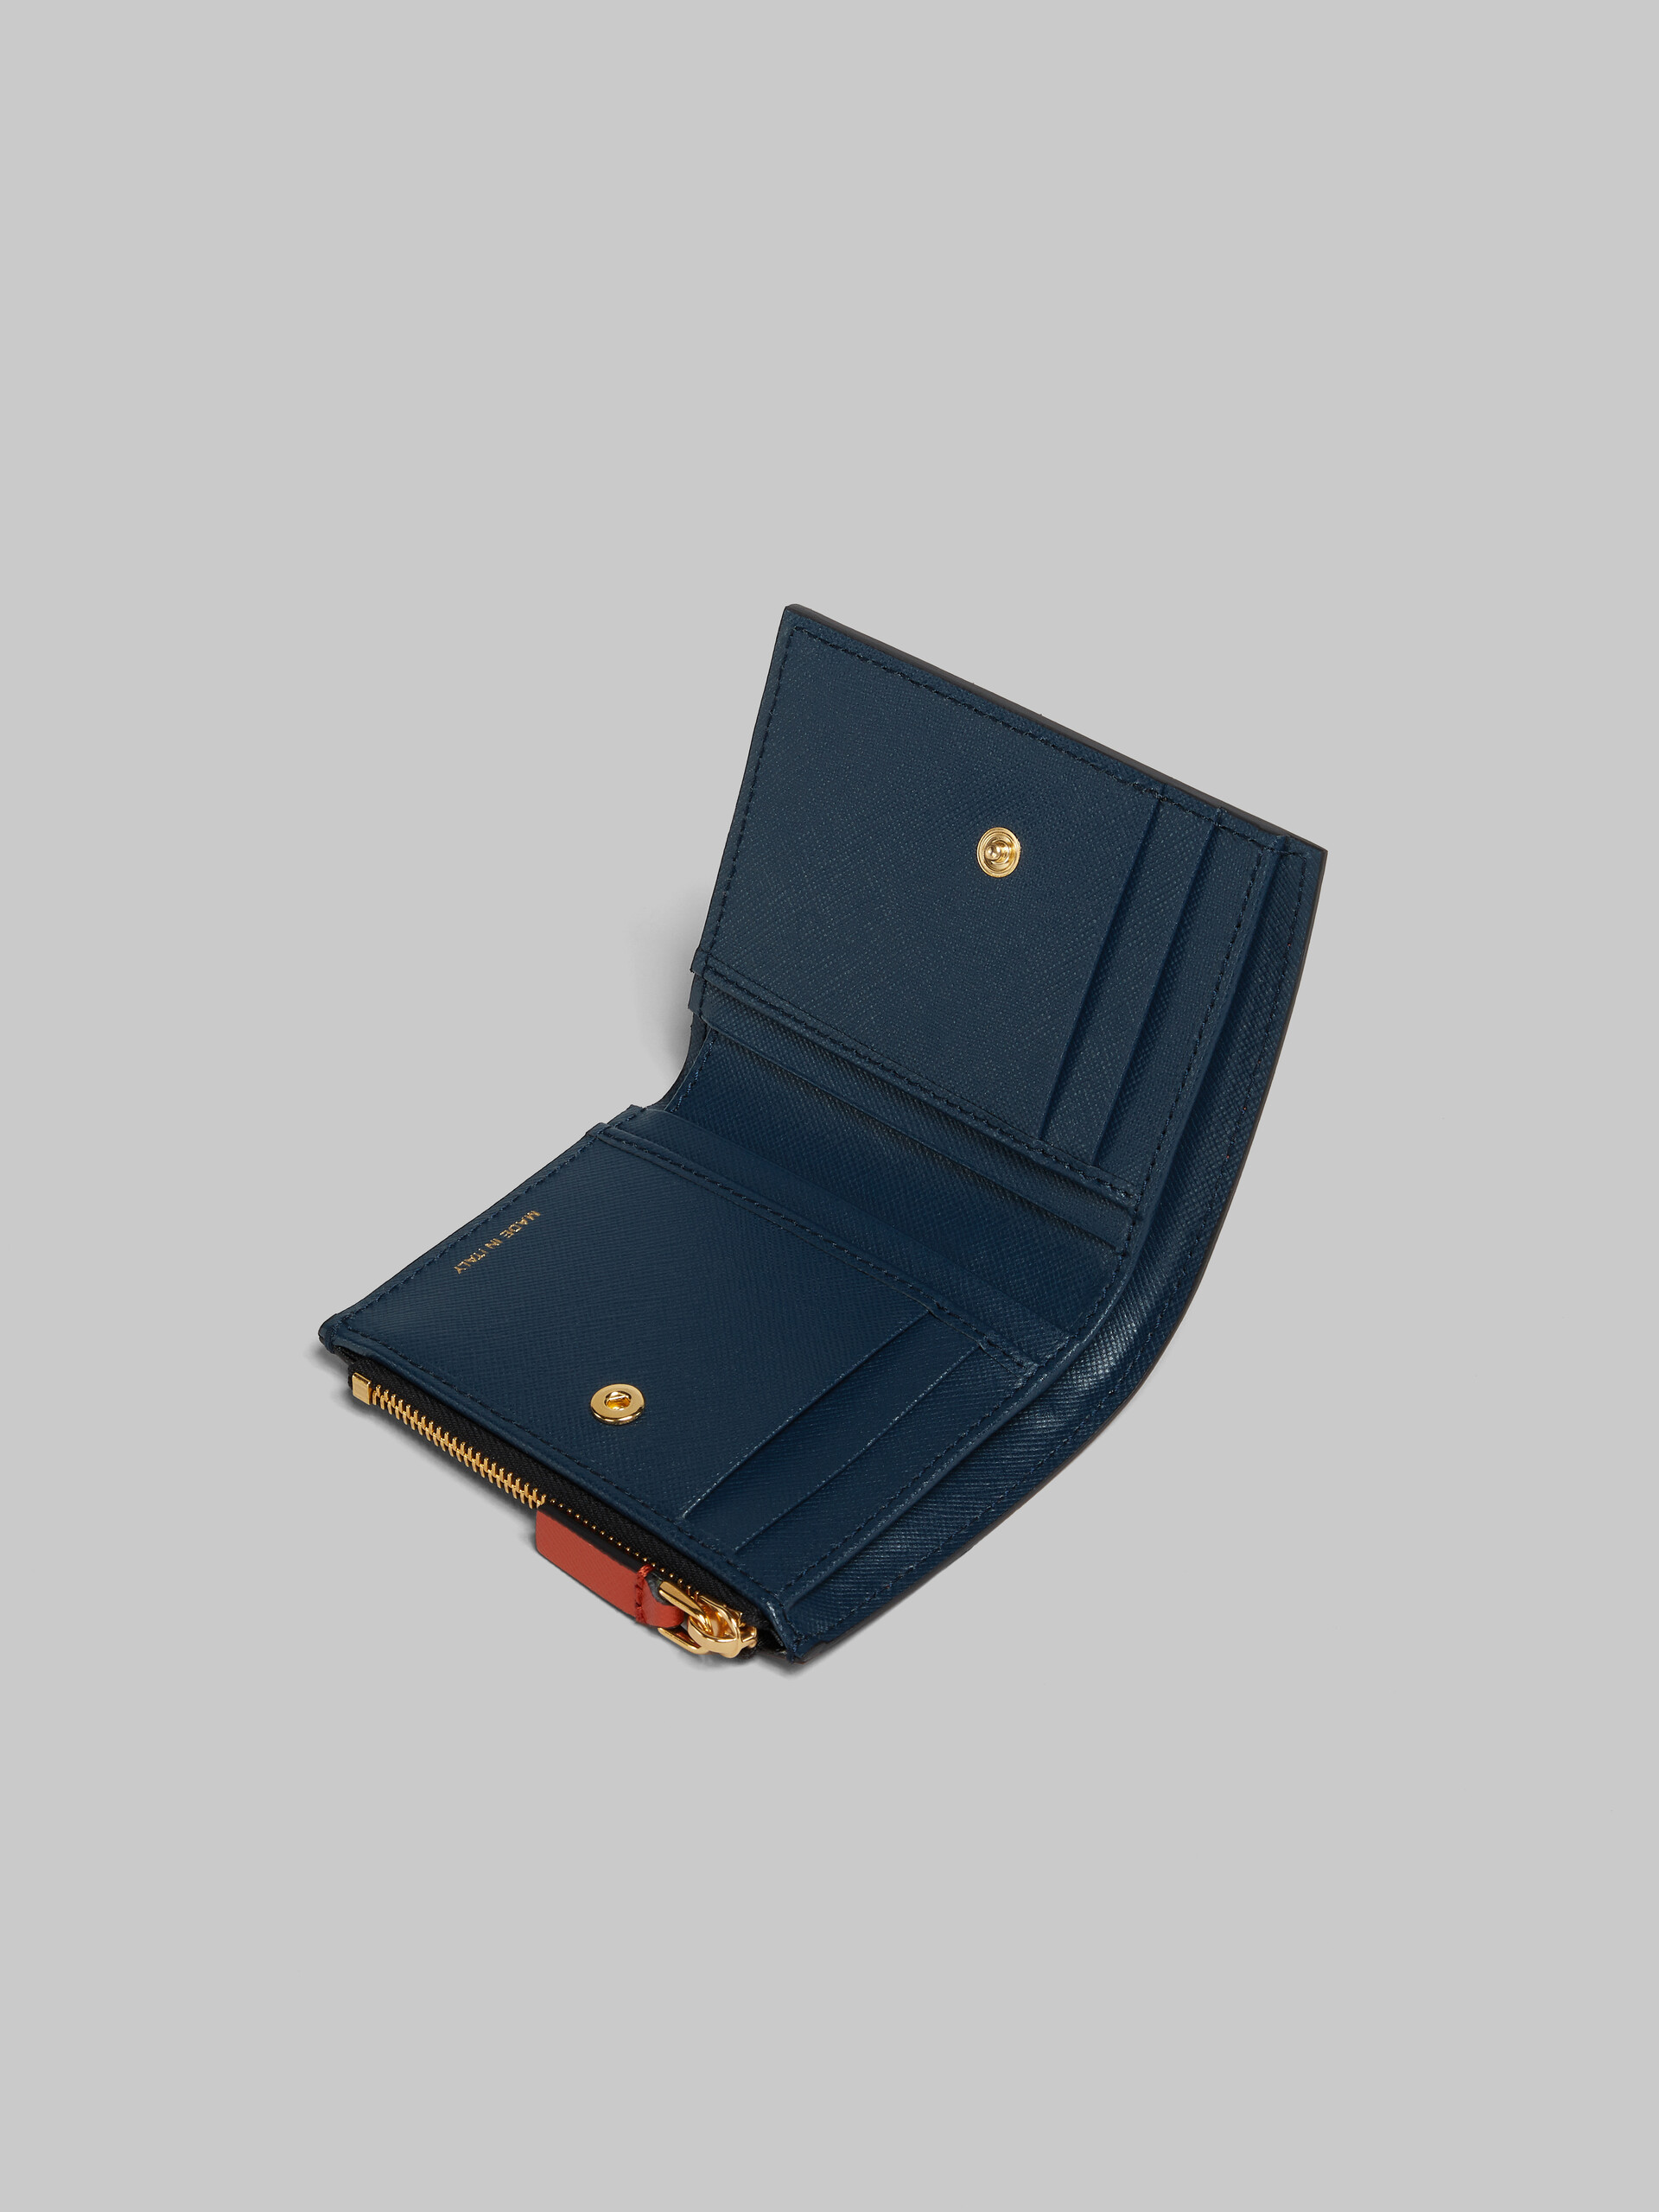 Portefeuille à deux volets en cuir Saffiano orange, crème et bleu profond - Portefeuilles - Image 4